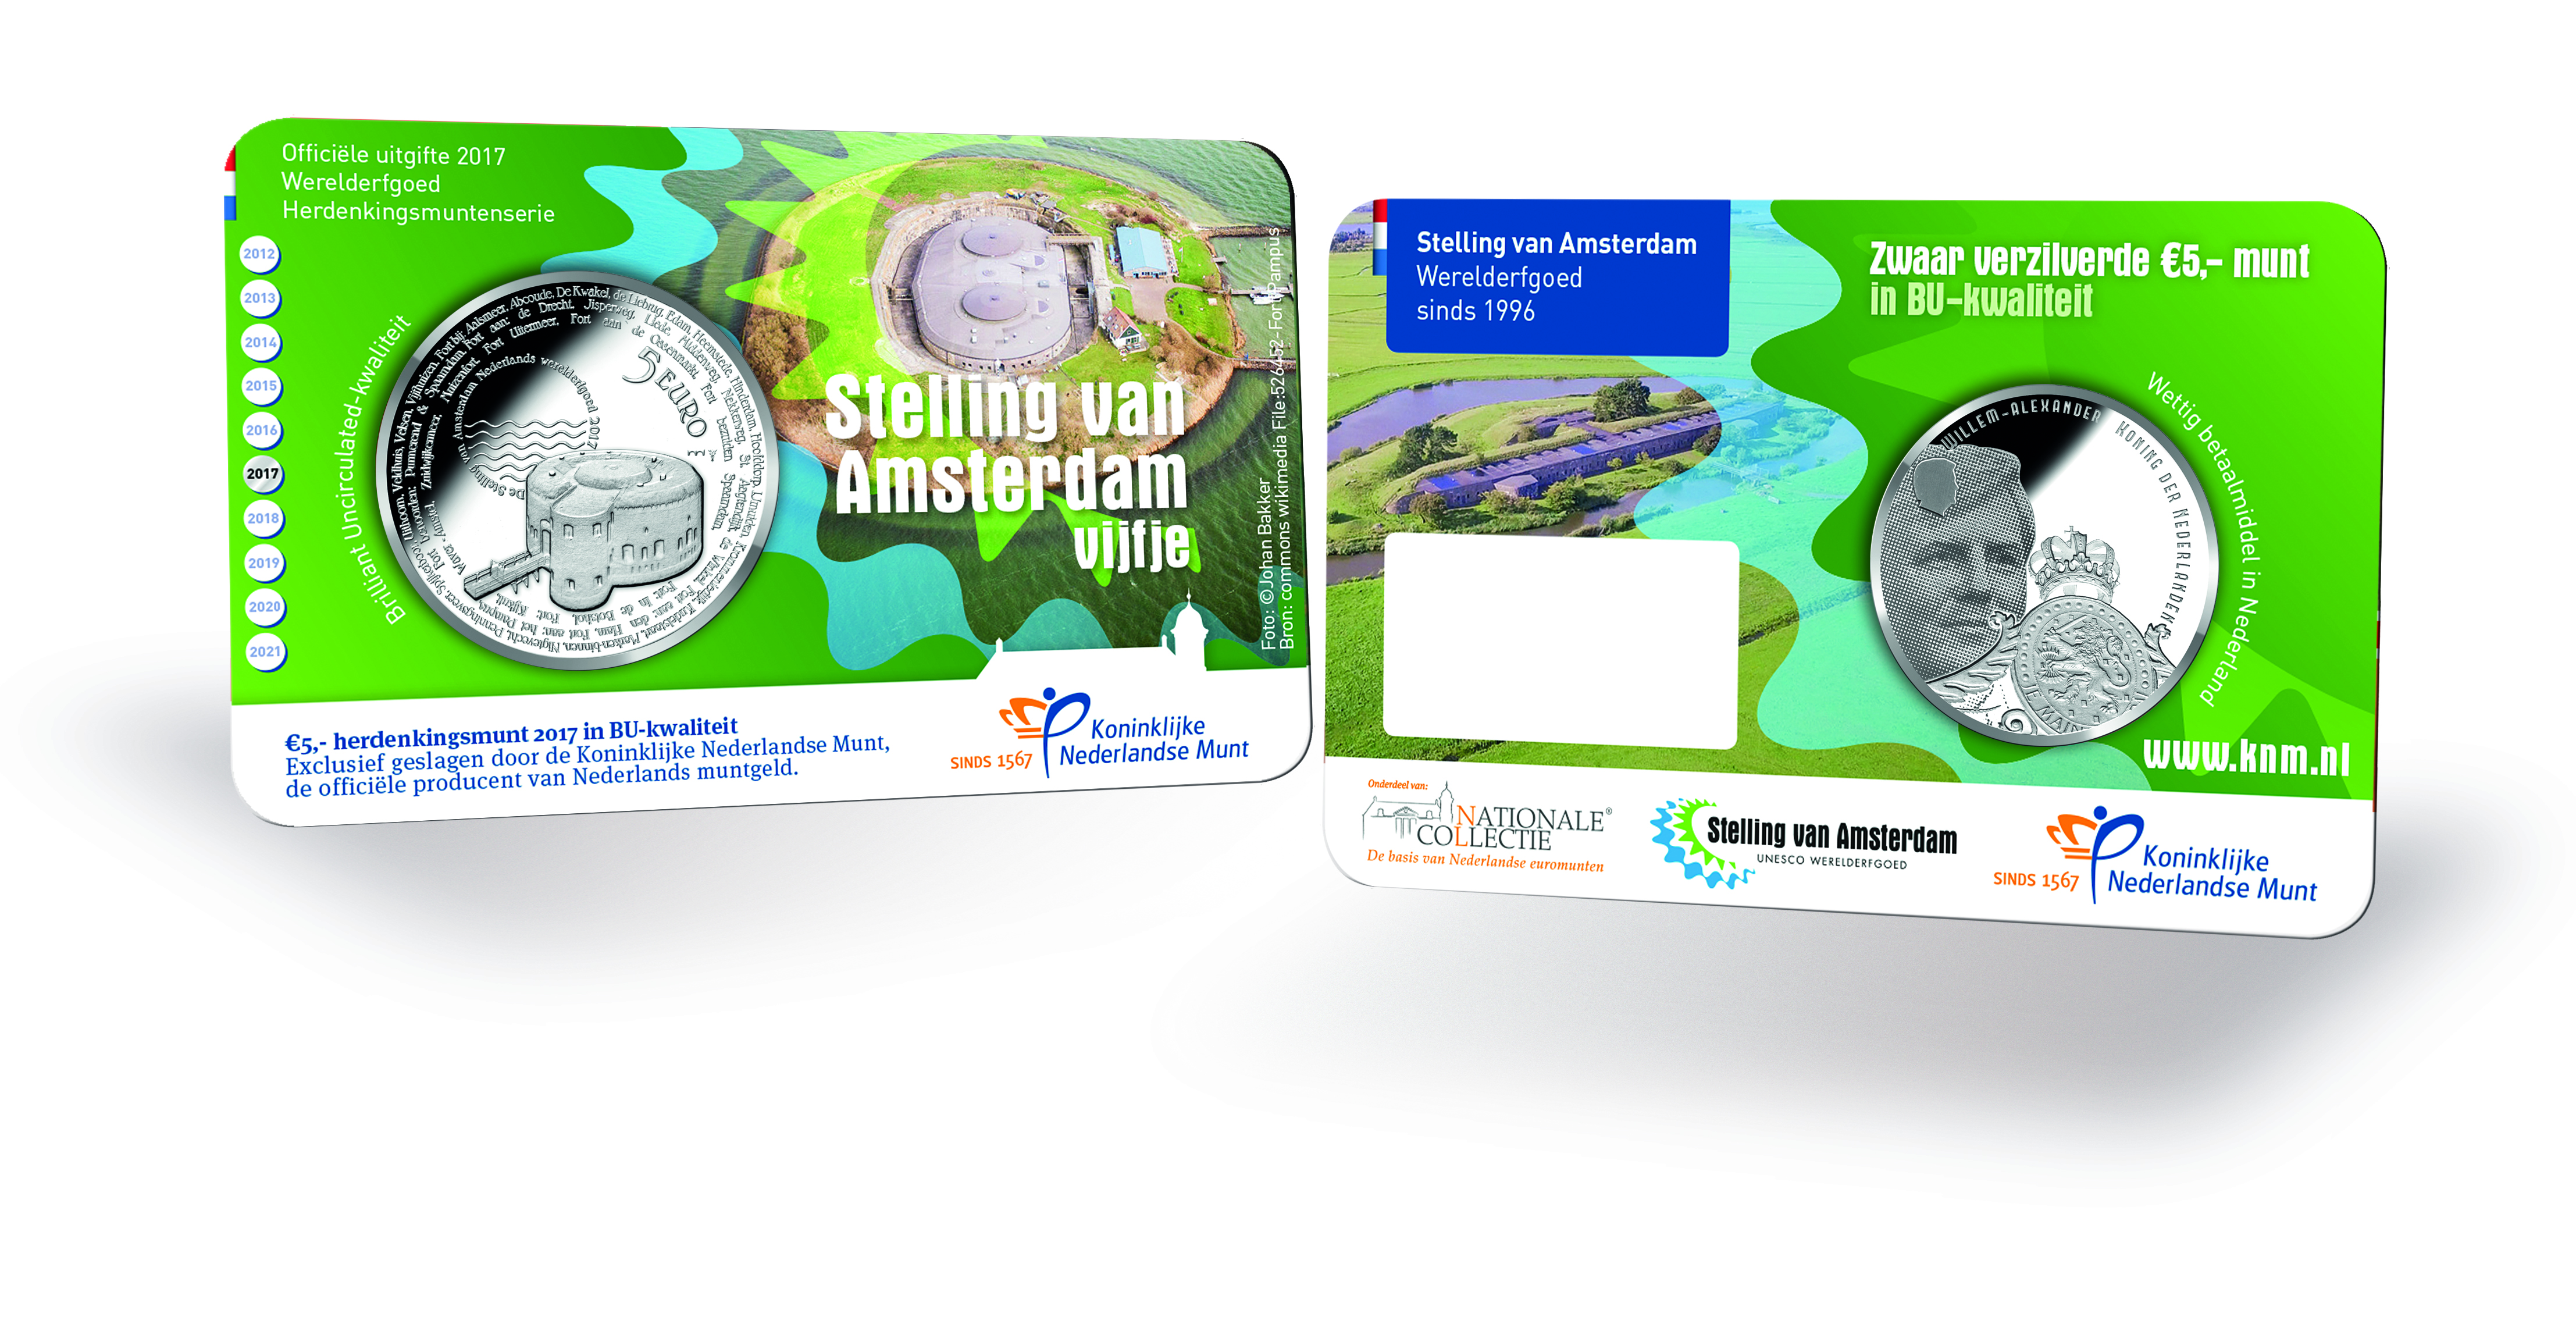 Stelling van Amsterdam 5 Euro 2017 coincard in BU-kwaliteit